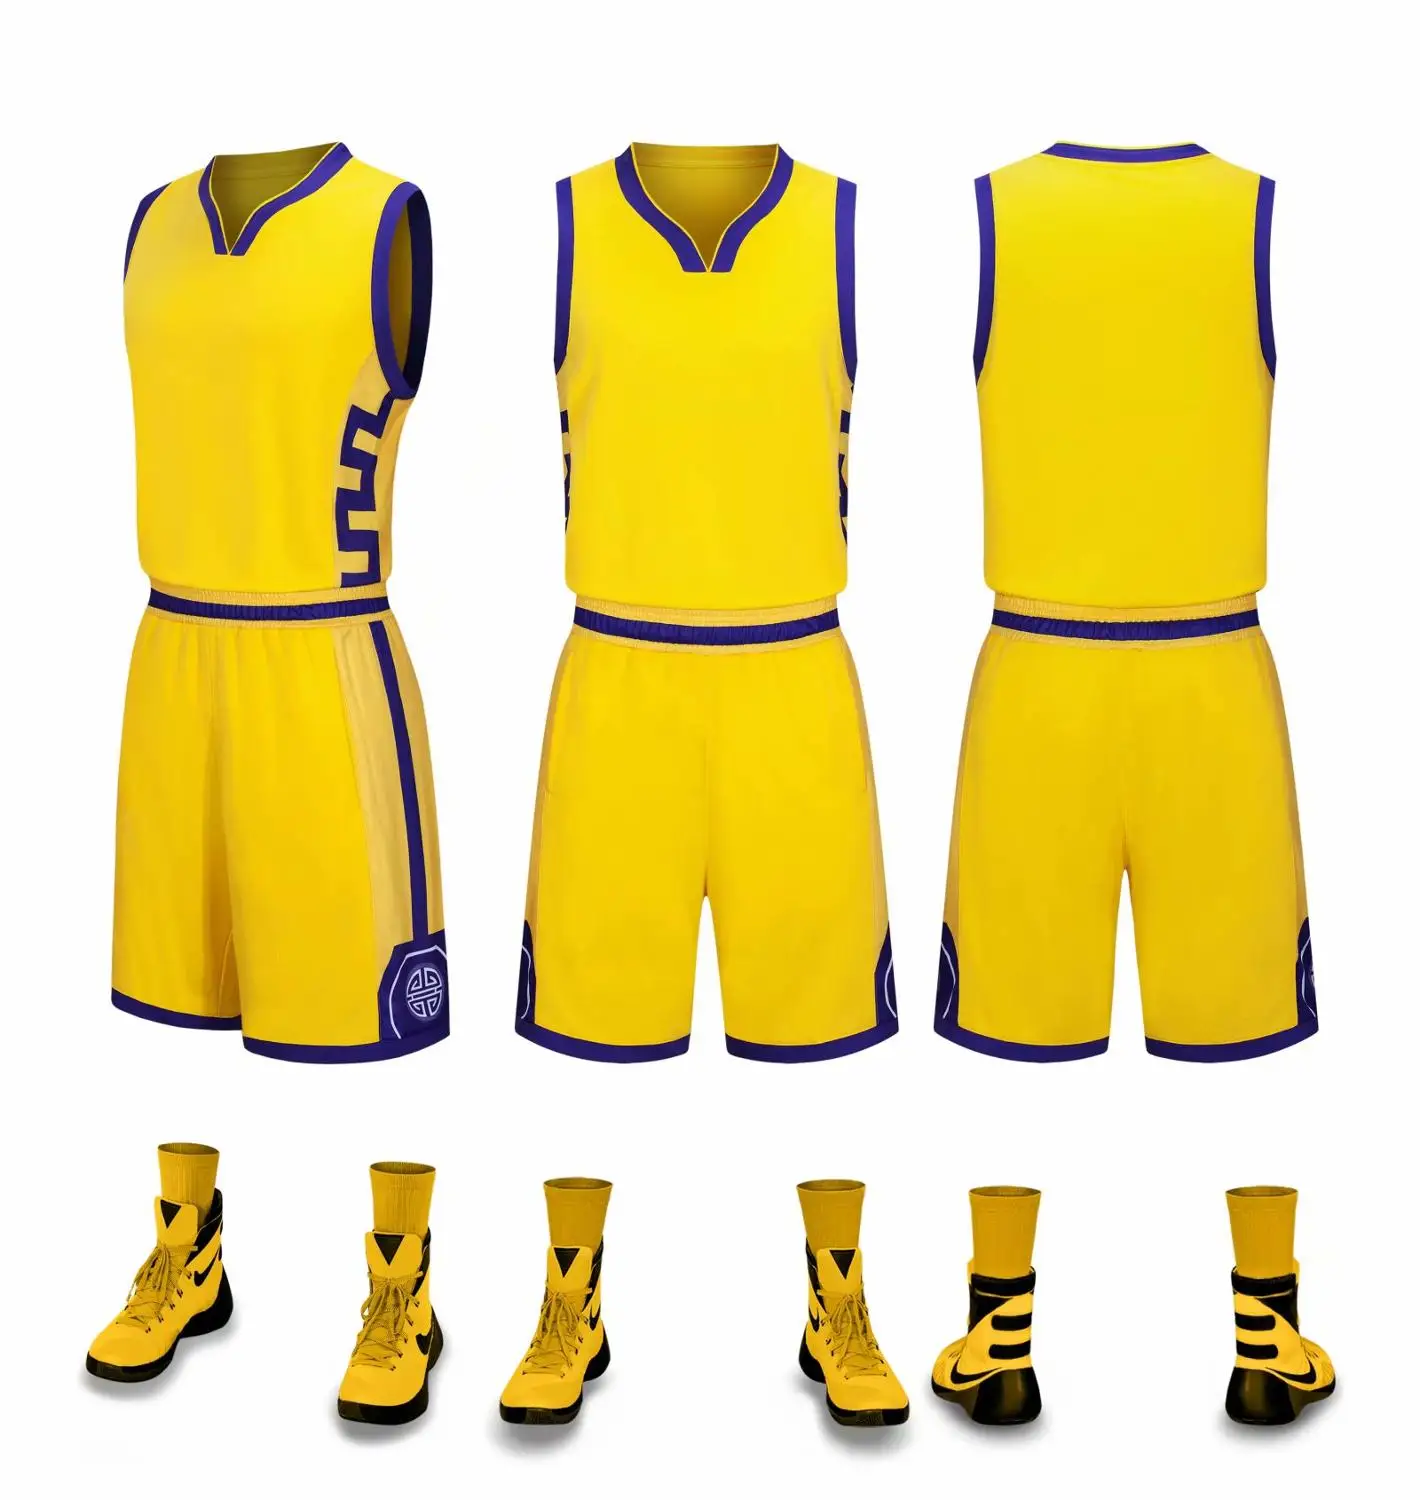 Баскетбольная форма для мальчиков и девочек, спортивный костюм, детские наборы для пробежки, командная игра, Детские баскетбольные формы, без надписей, шорты на заказ - Цвет: 879 yellow